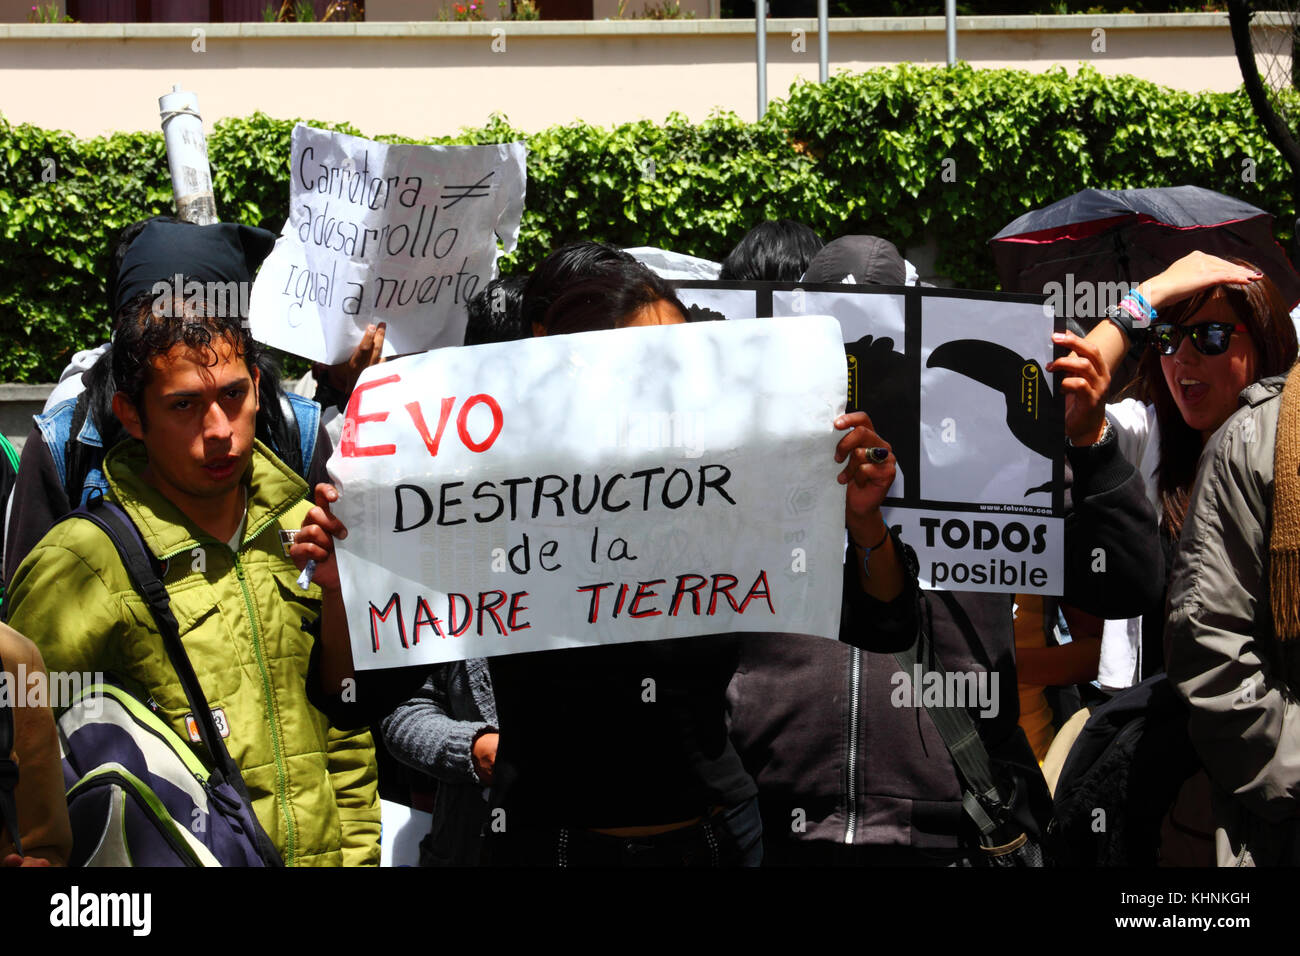 Les manifestants qui protestaient contre l'governemt prévoit de construire une route à travers la région TIPNIS, La Paz, Bolivie Banque D'Images